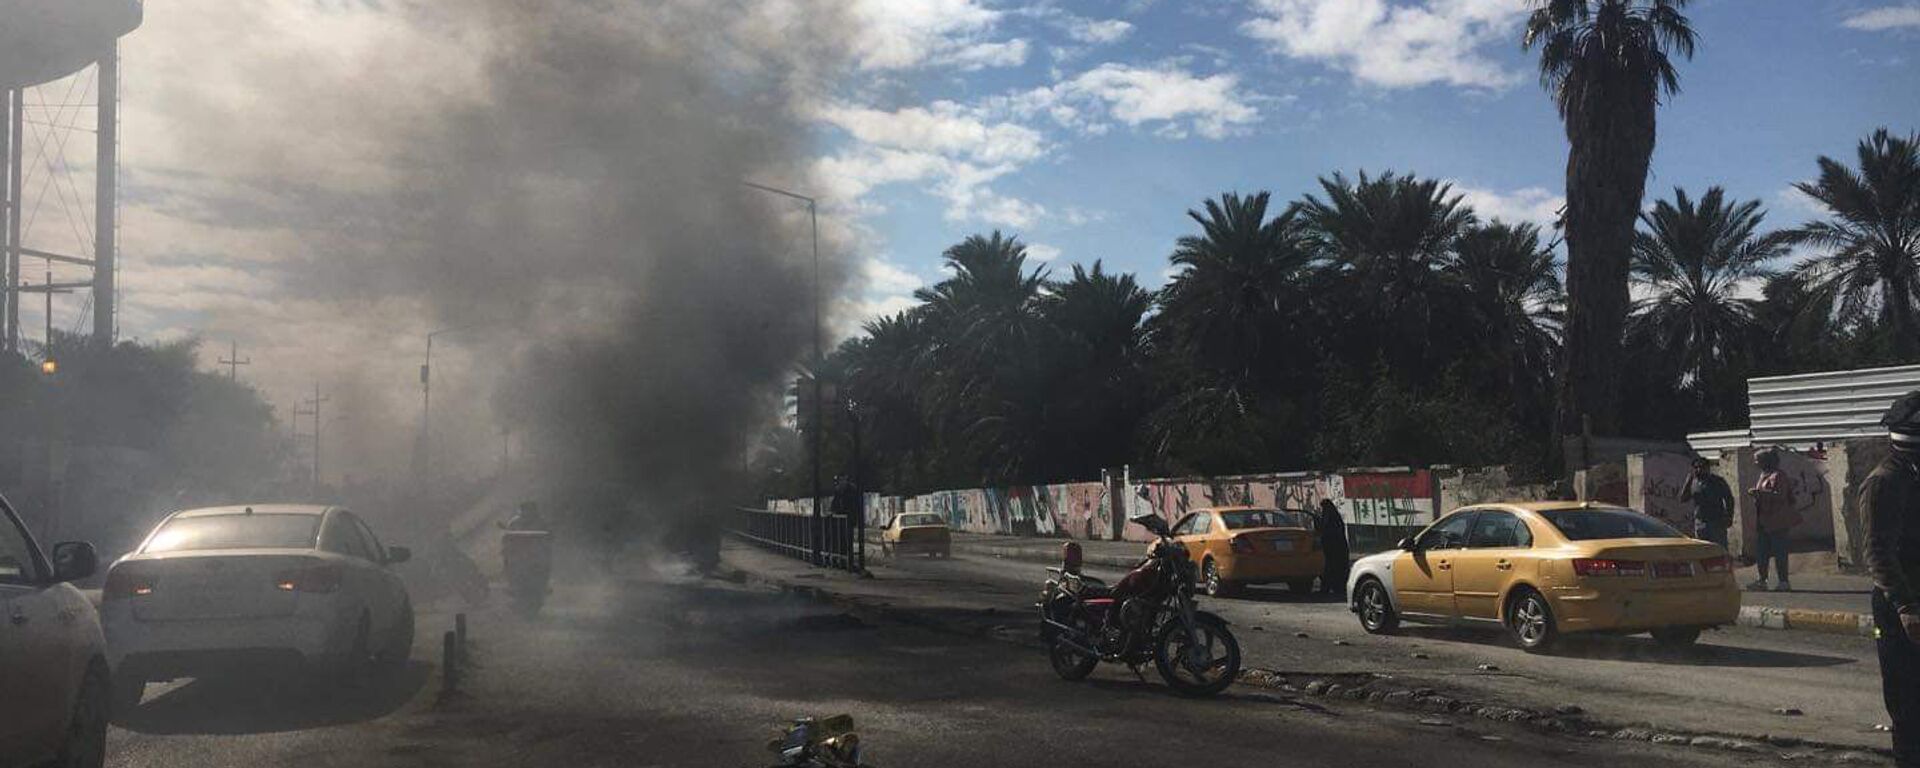 السويد تدين الهجوم على سفارتها في بغداد وتحمل السلطات العراقية مسؤولية حماية موظفيها